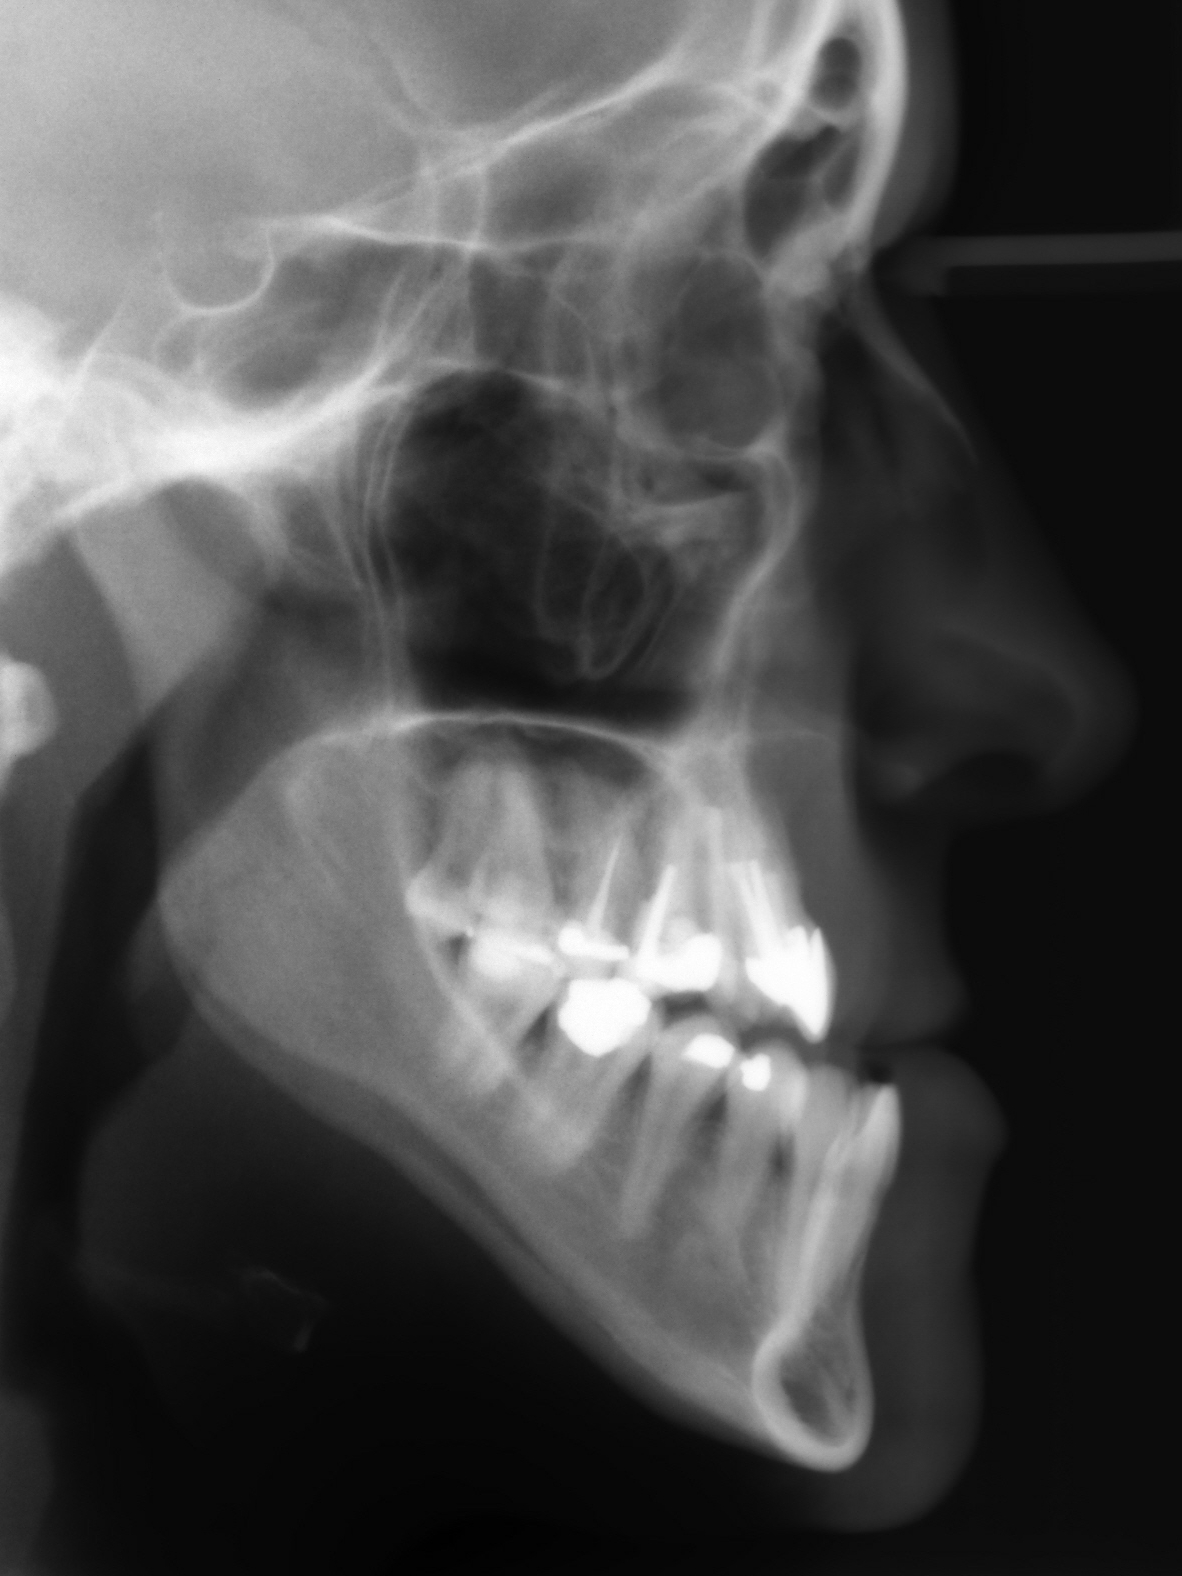 Röntgenbild der Patientin mit vorstehendem Unterkiefer